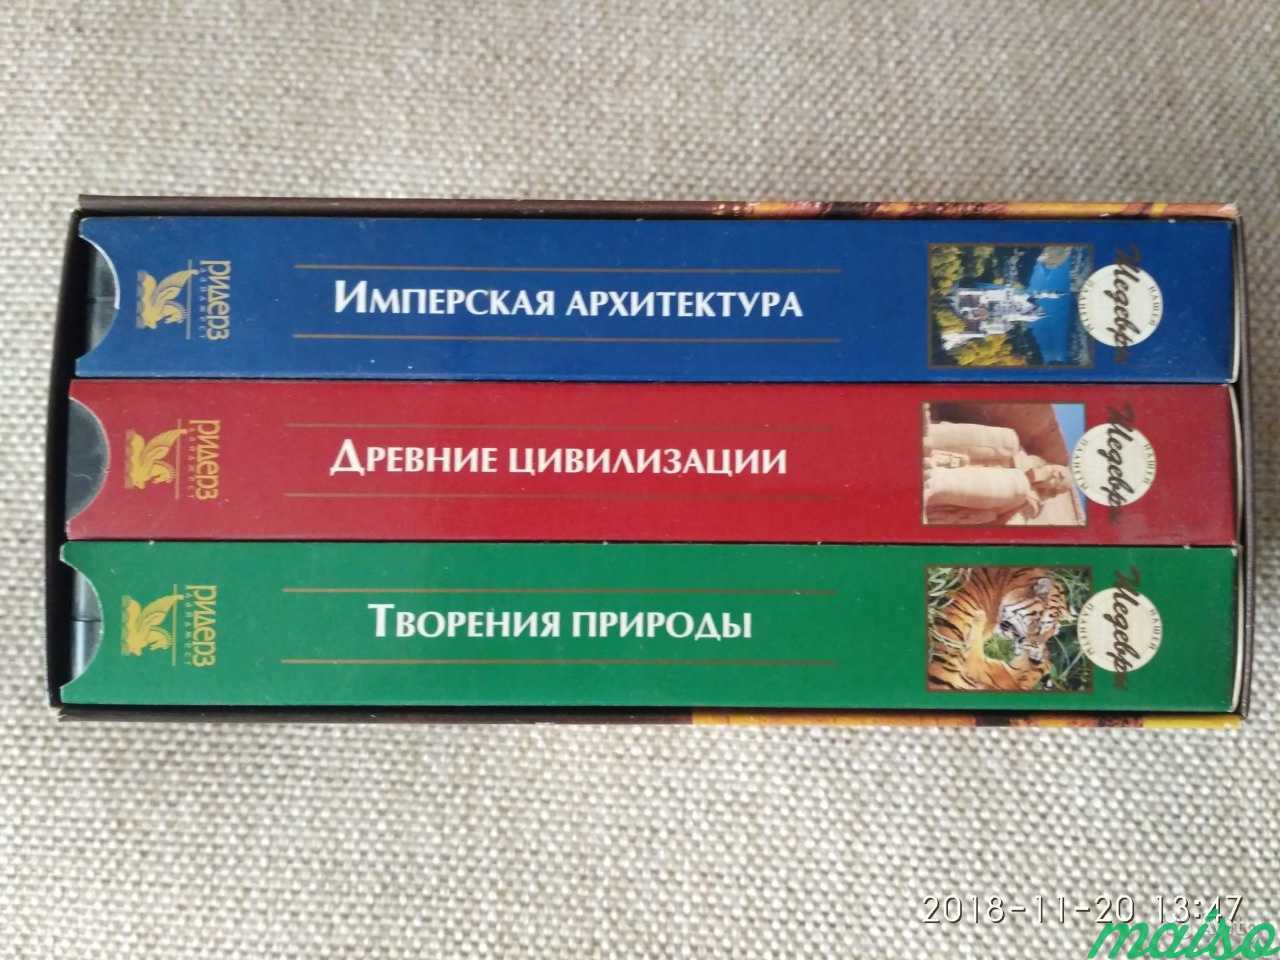 Тематические видеокассеты для видеоплеера в Санкт-Петербурге. Фото 3